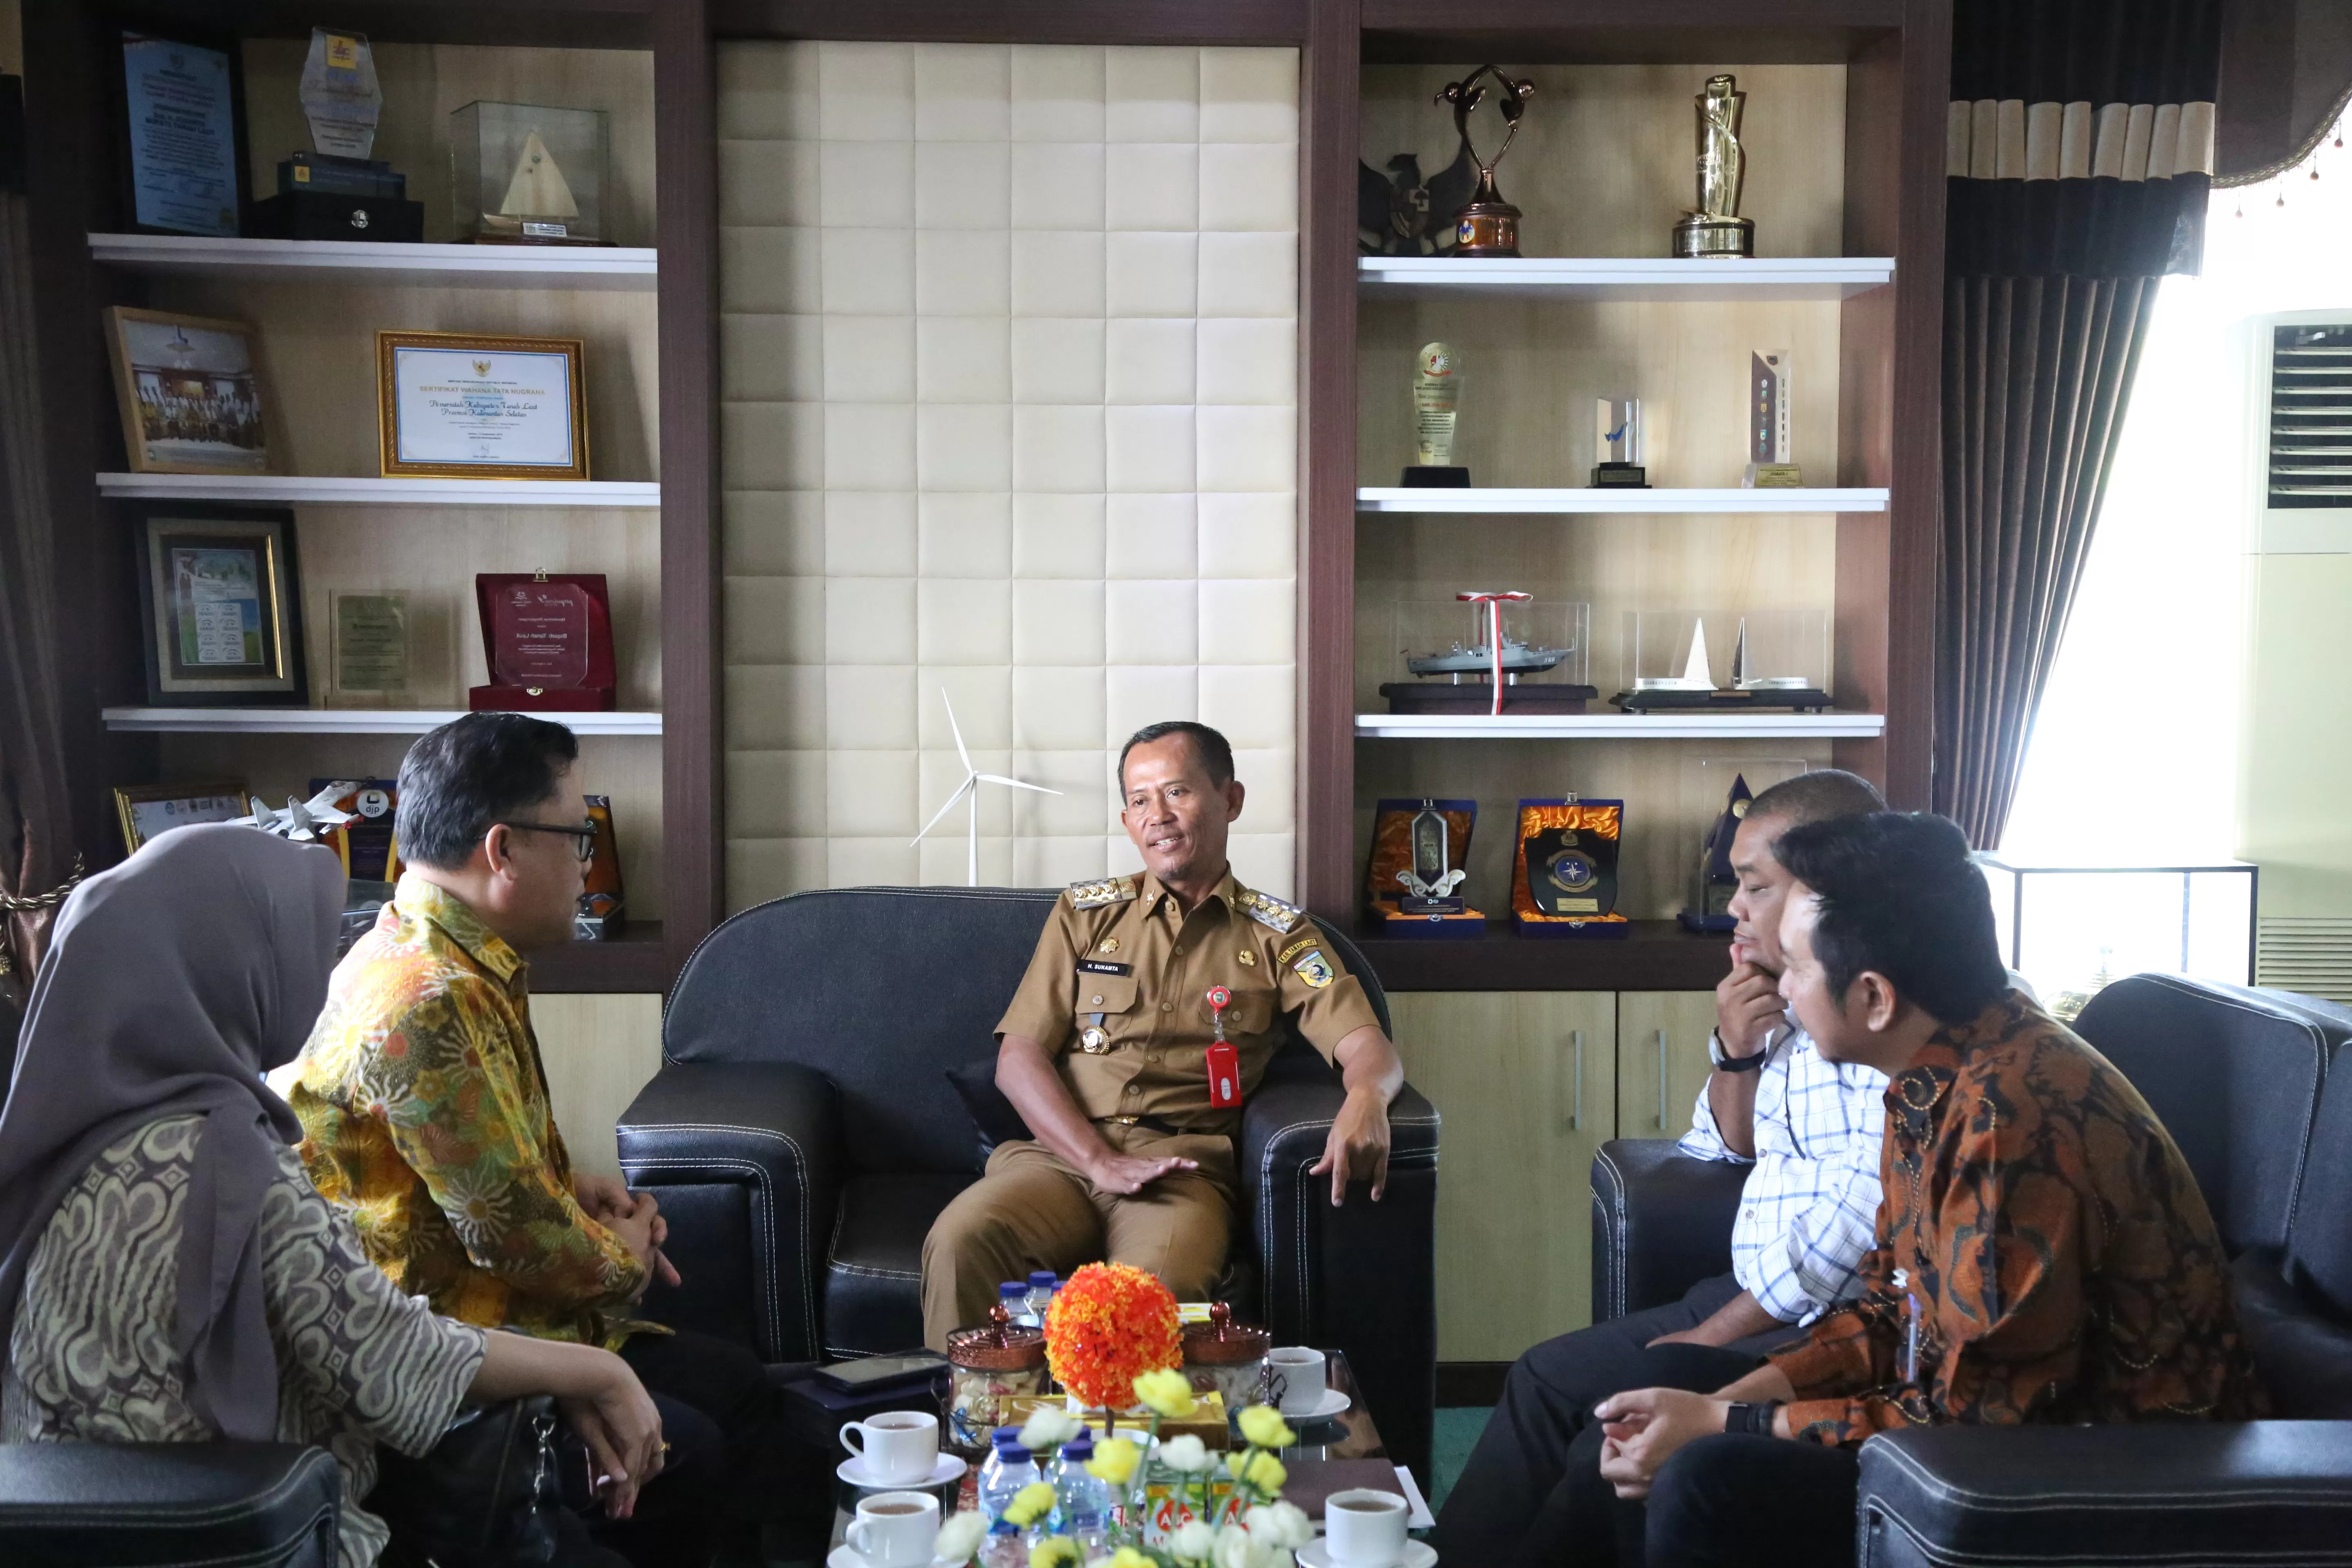 KERJA SAMA: Bupati Tala Sukamta berbincang santai dengan pihak Bank BTN tentang kerja sama pengadaan rumah bersubsidi.